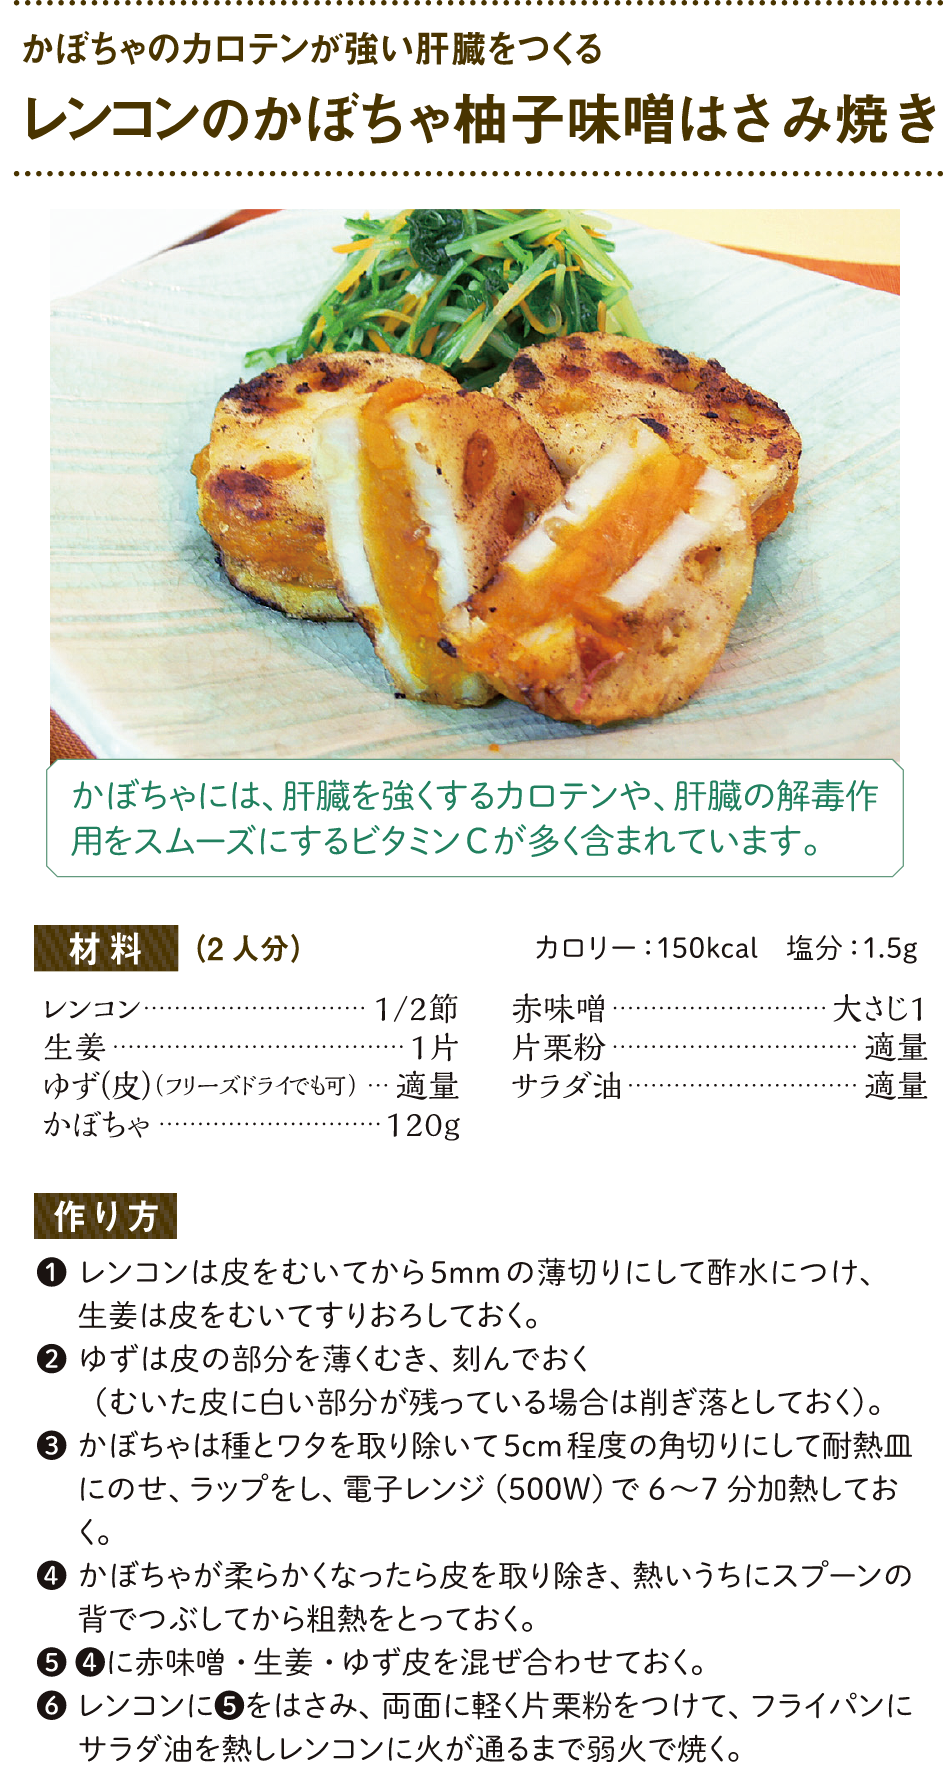 (肝臓病予防)レンコンのかぼちゃ柚子味噌はさみ焼き